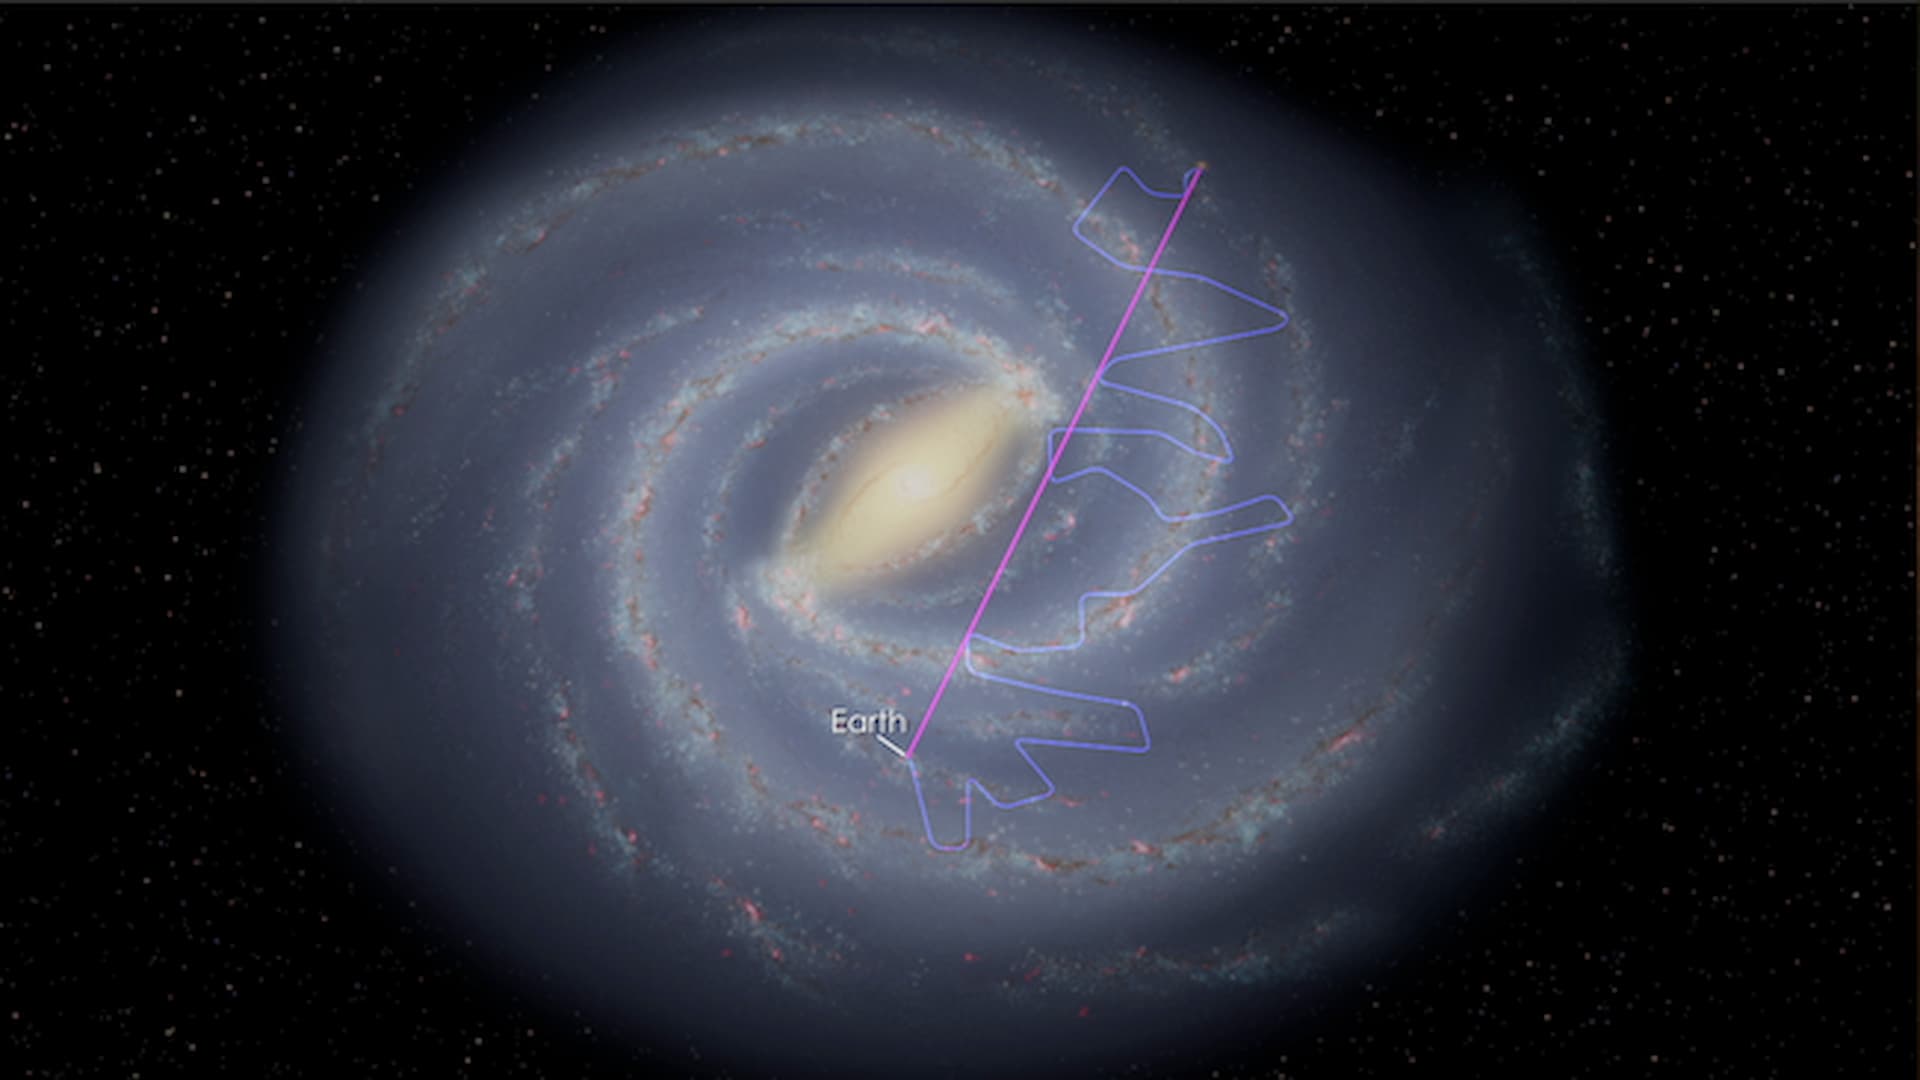 MoRe-ASI: “Direct Measurement of Galactic Cosmic Rays”